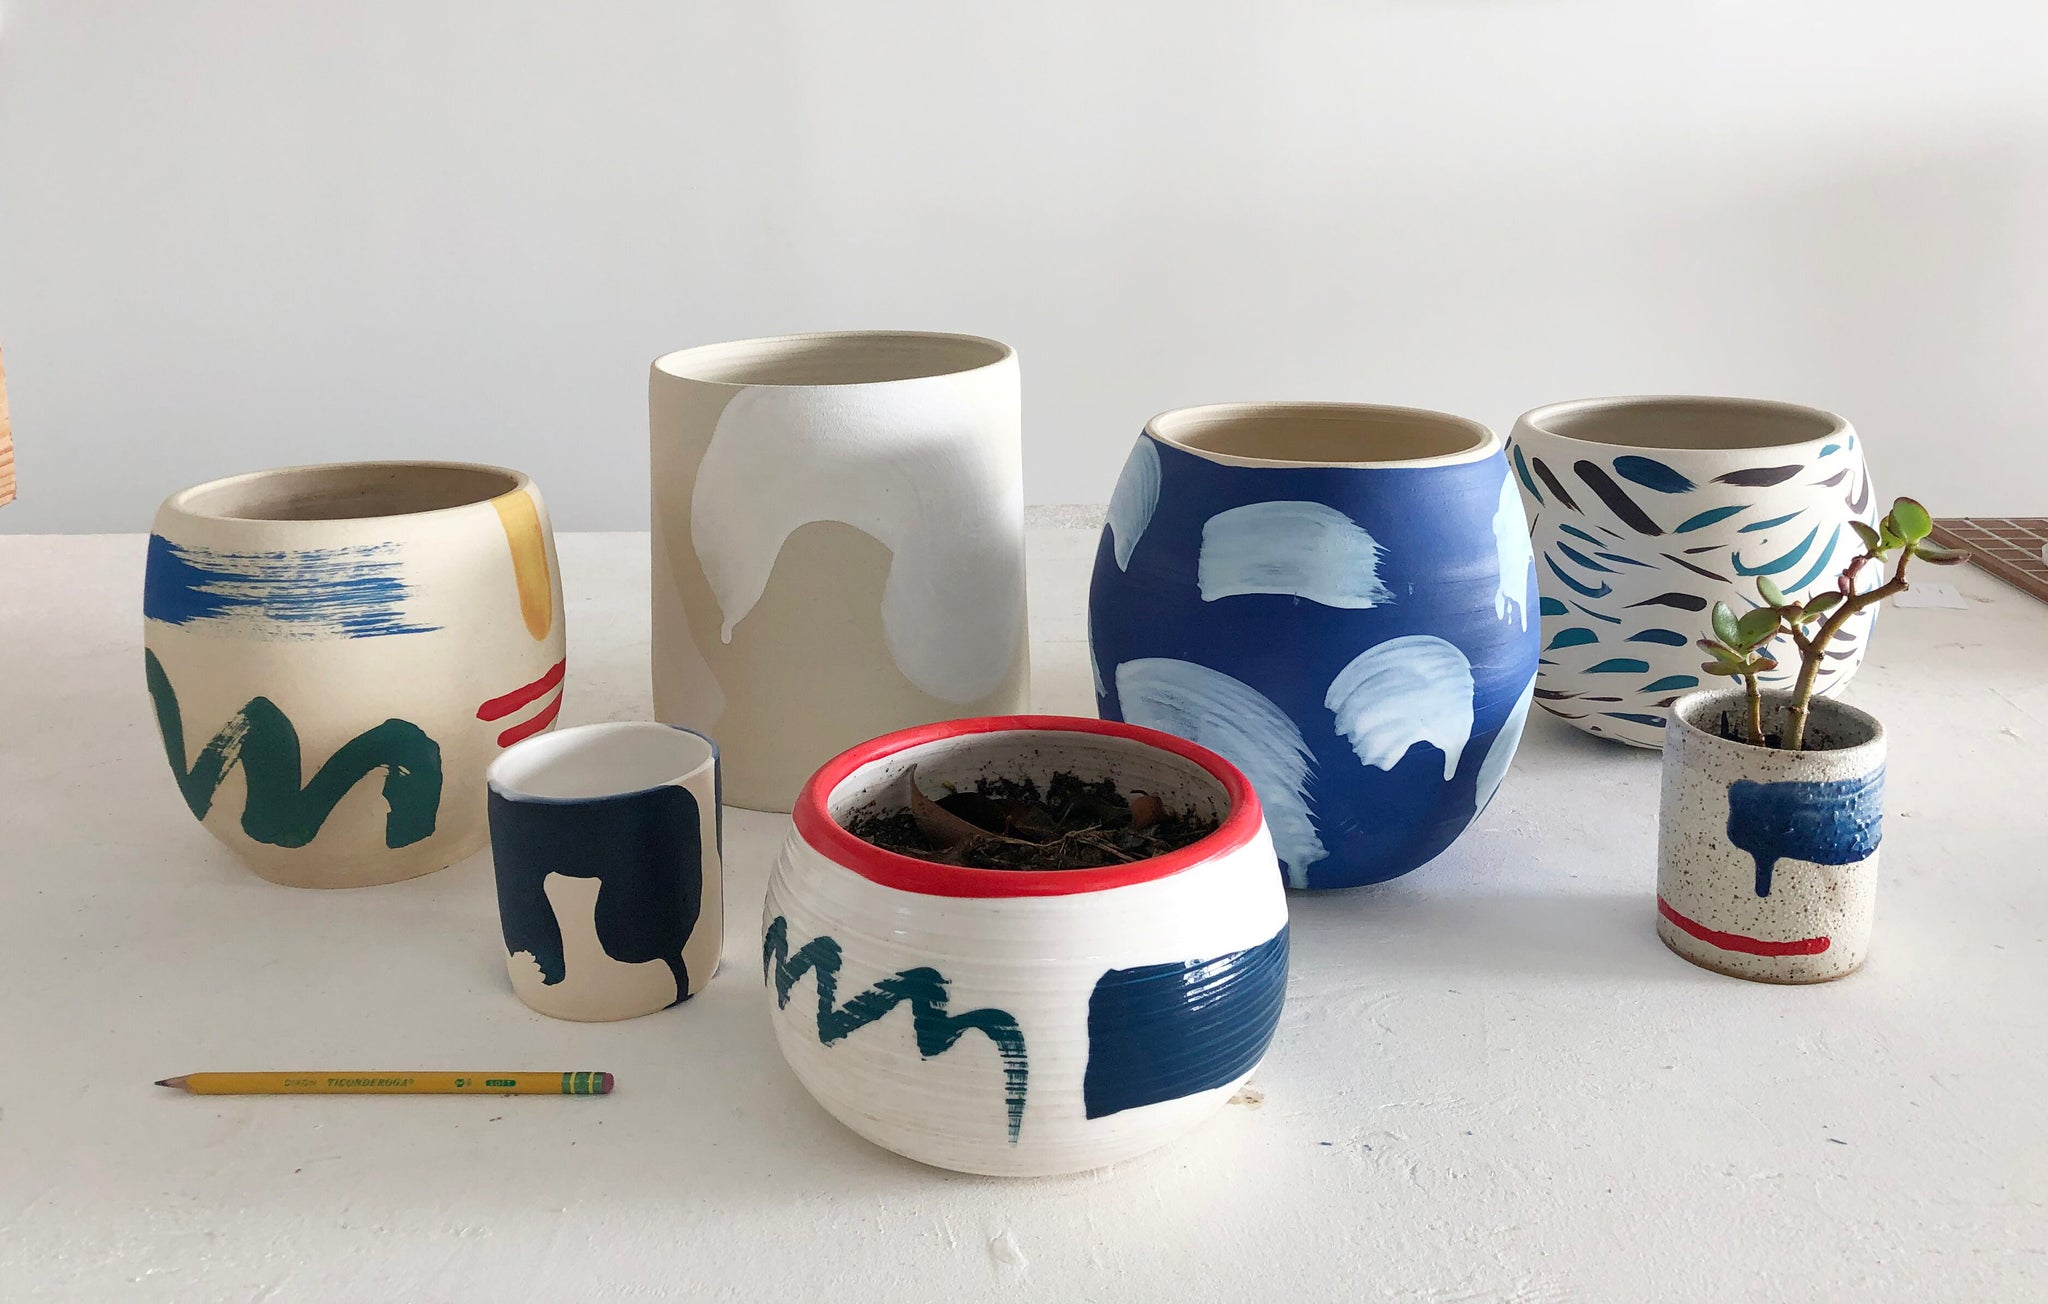 Sara Bright, "ceramic planters"